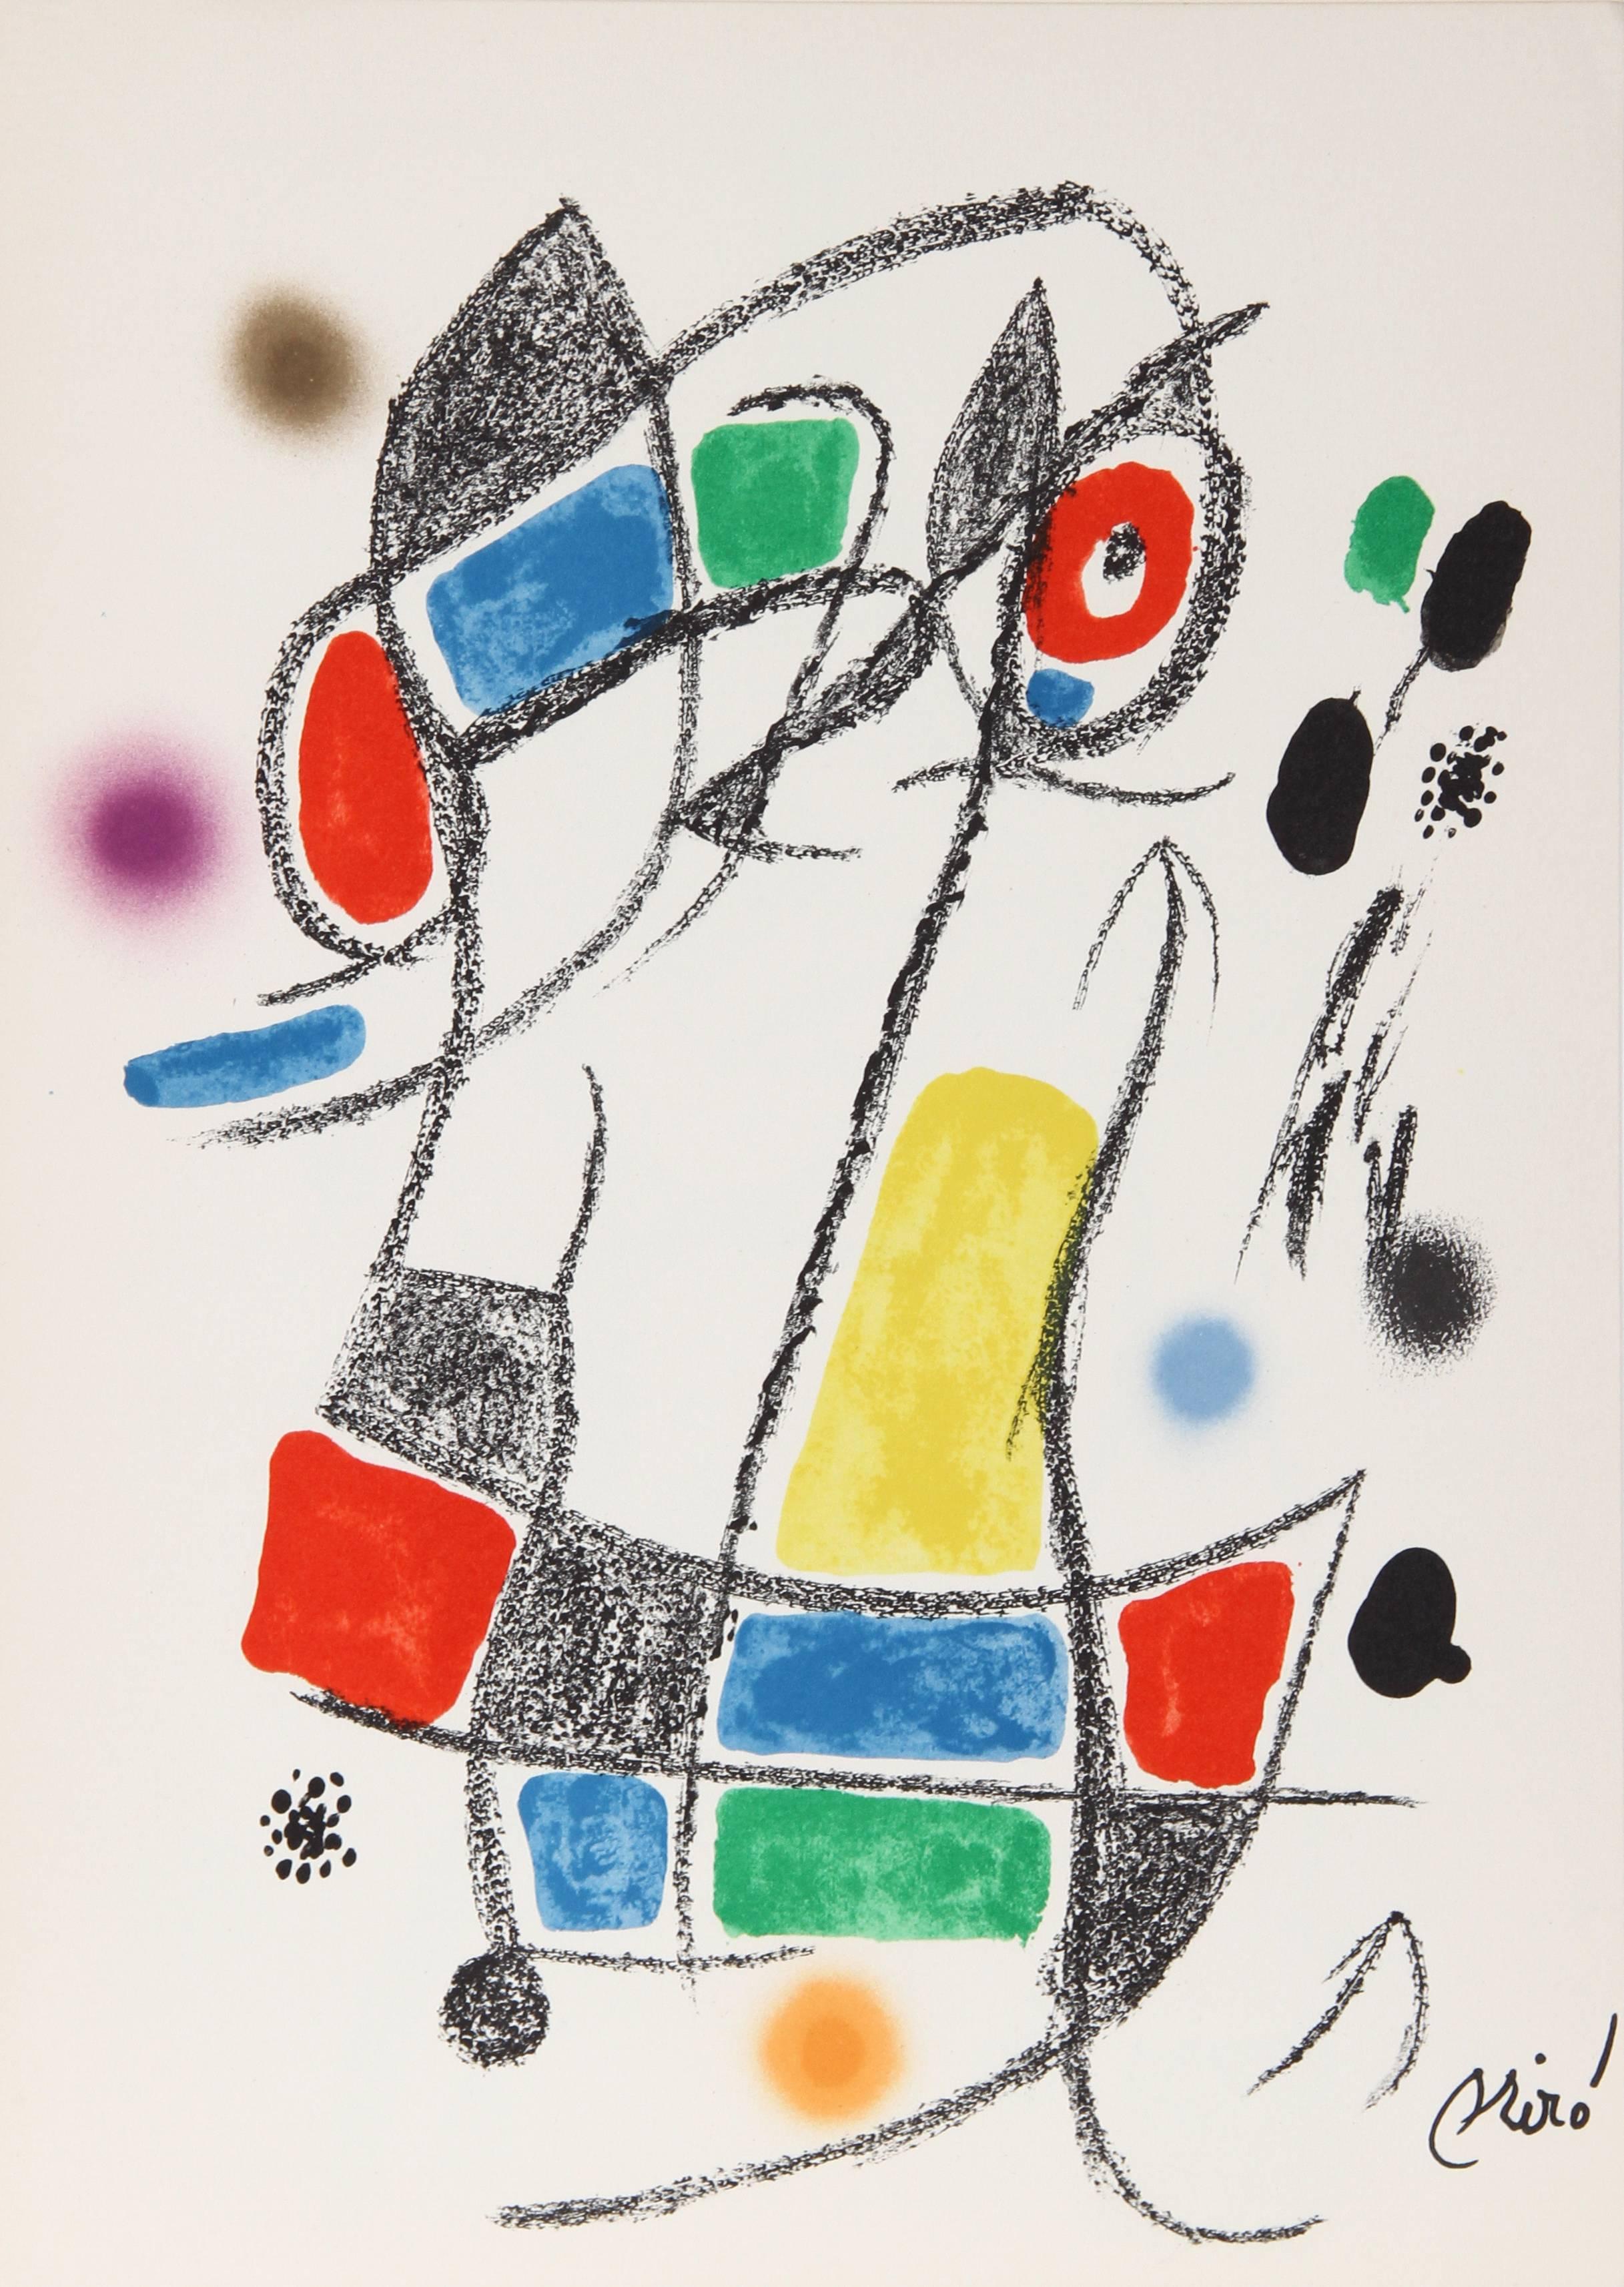  Maravillas mit Variations Acrosticas en el Jardin de Miro (Nr. 3) – Print von Joan Miró